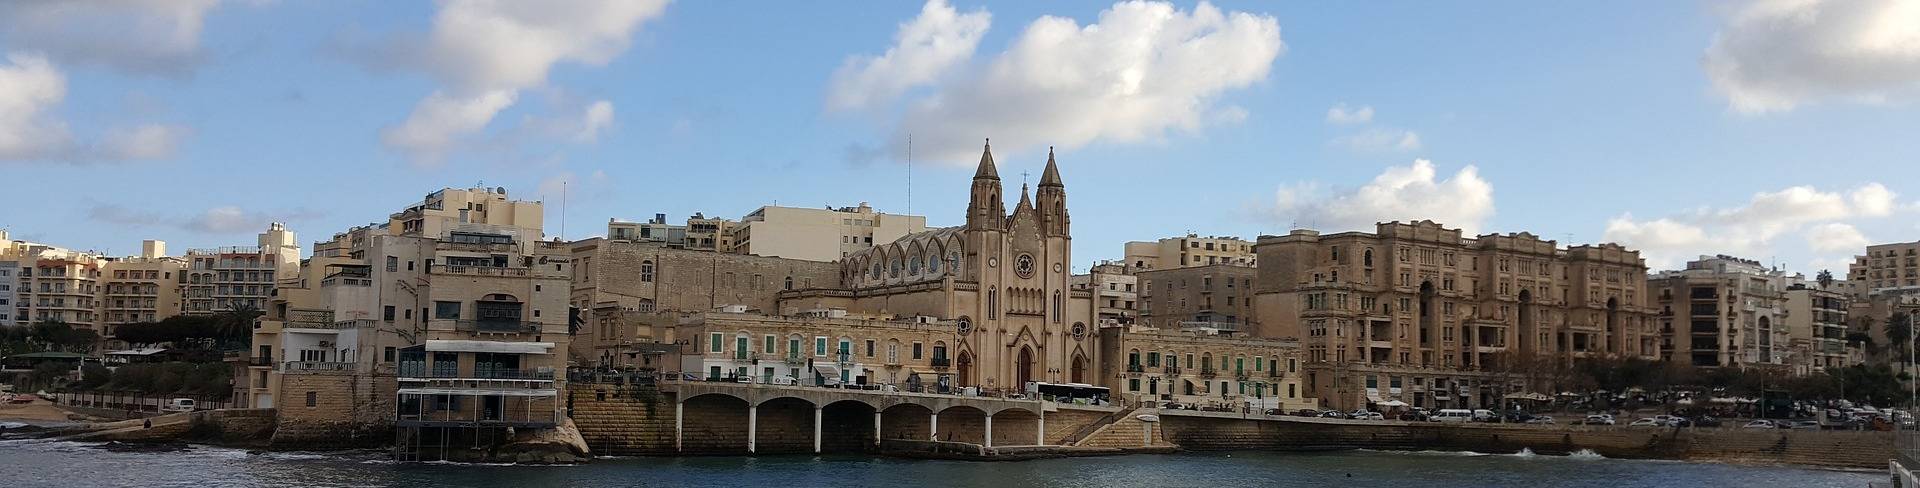 Слима - город на Мальте